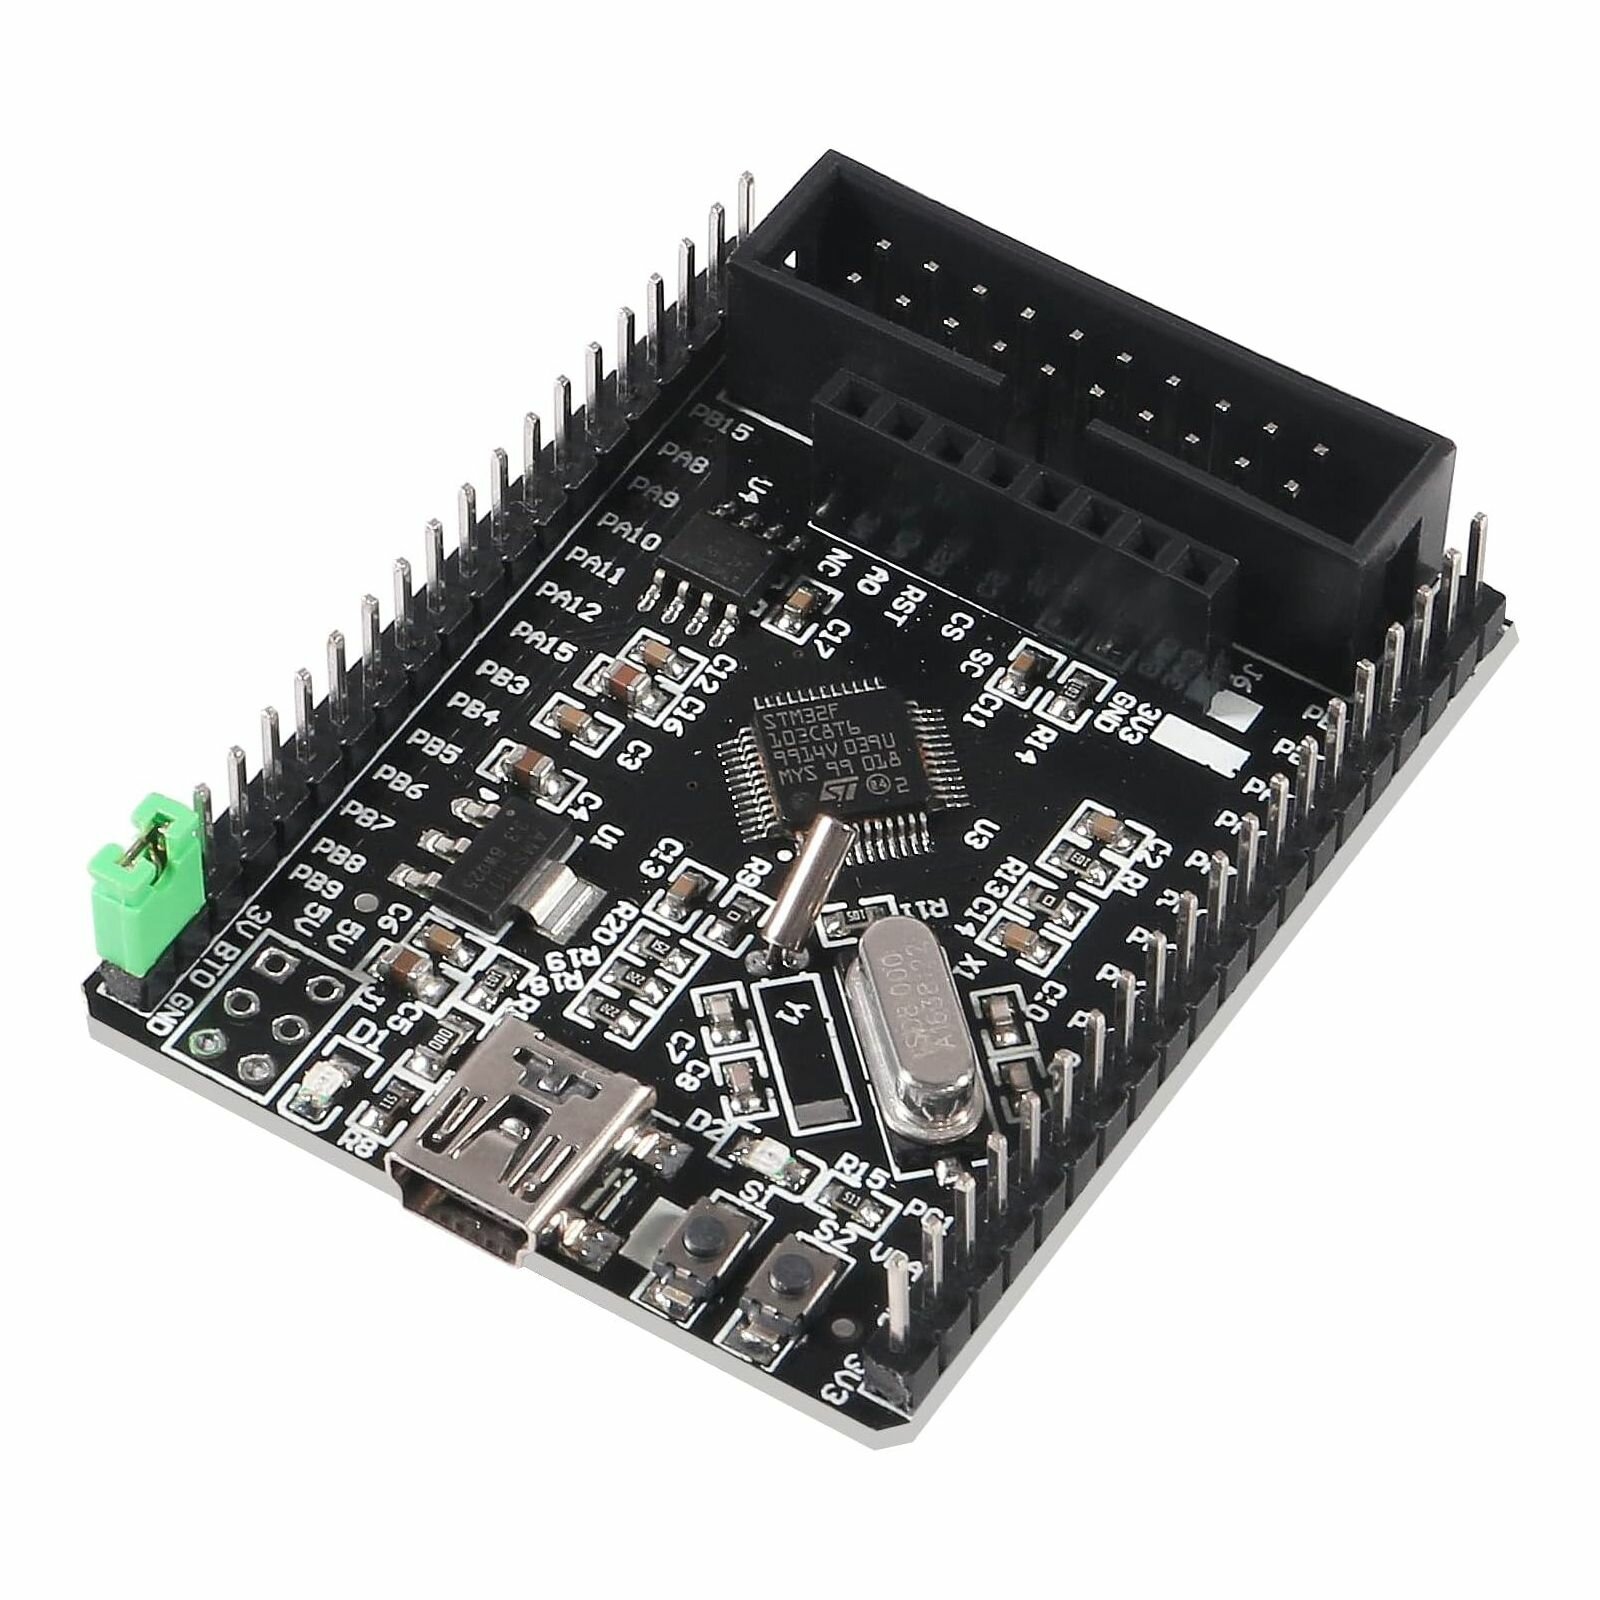 Отладочная плата STM32 Smart V2.0 на STM32F103C8T6 (ARM Cortex-M3 32-bit RISC) (5 штук)